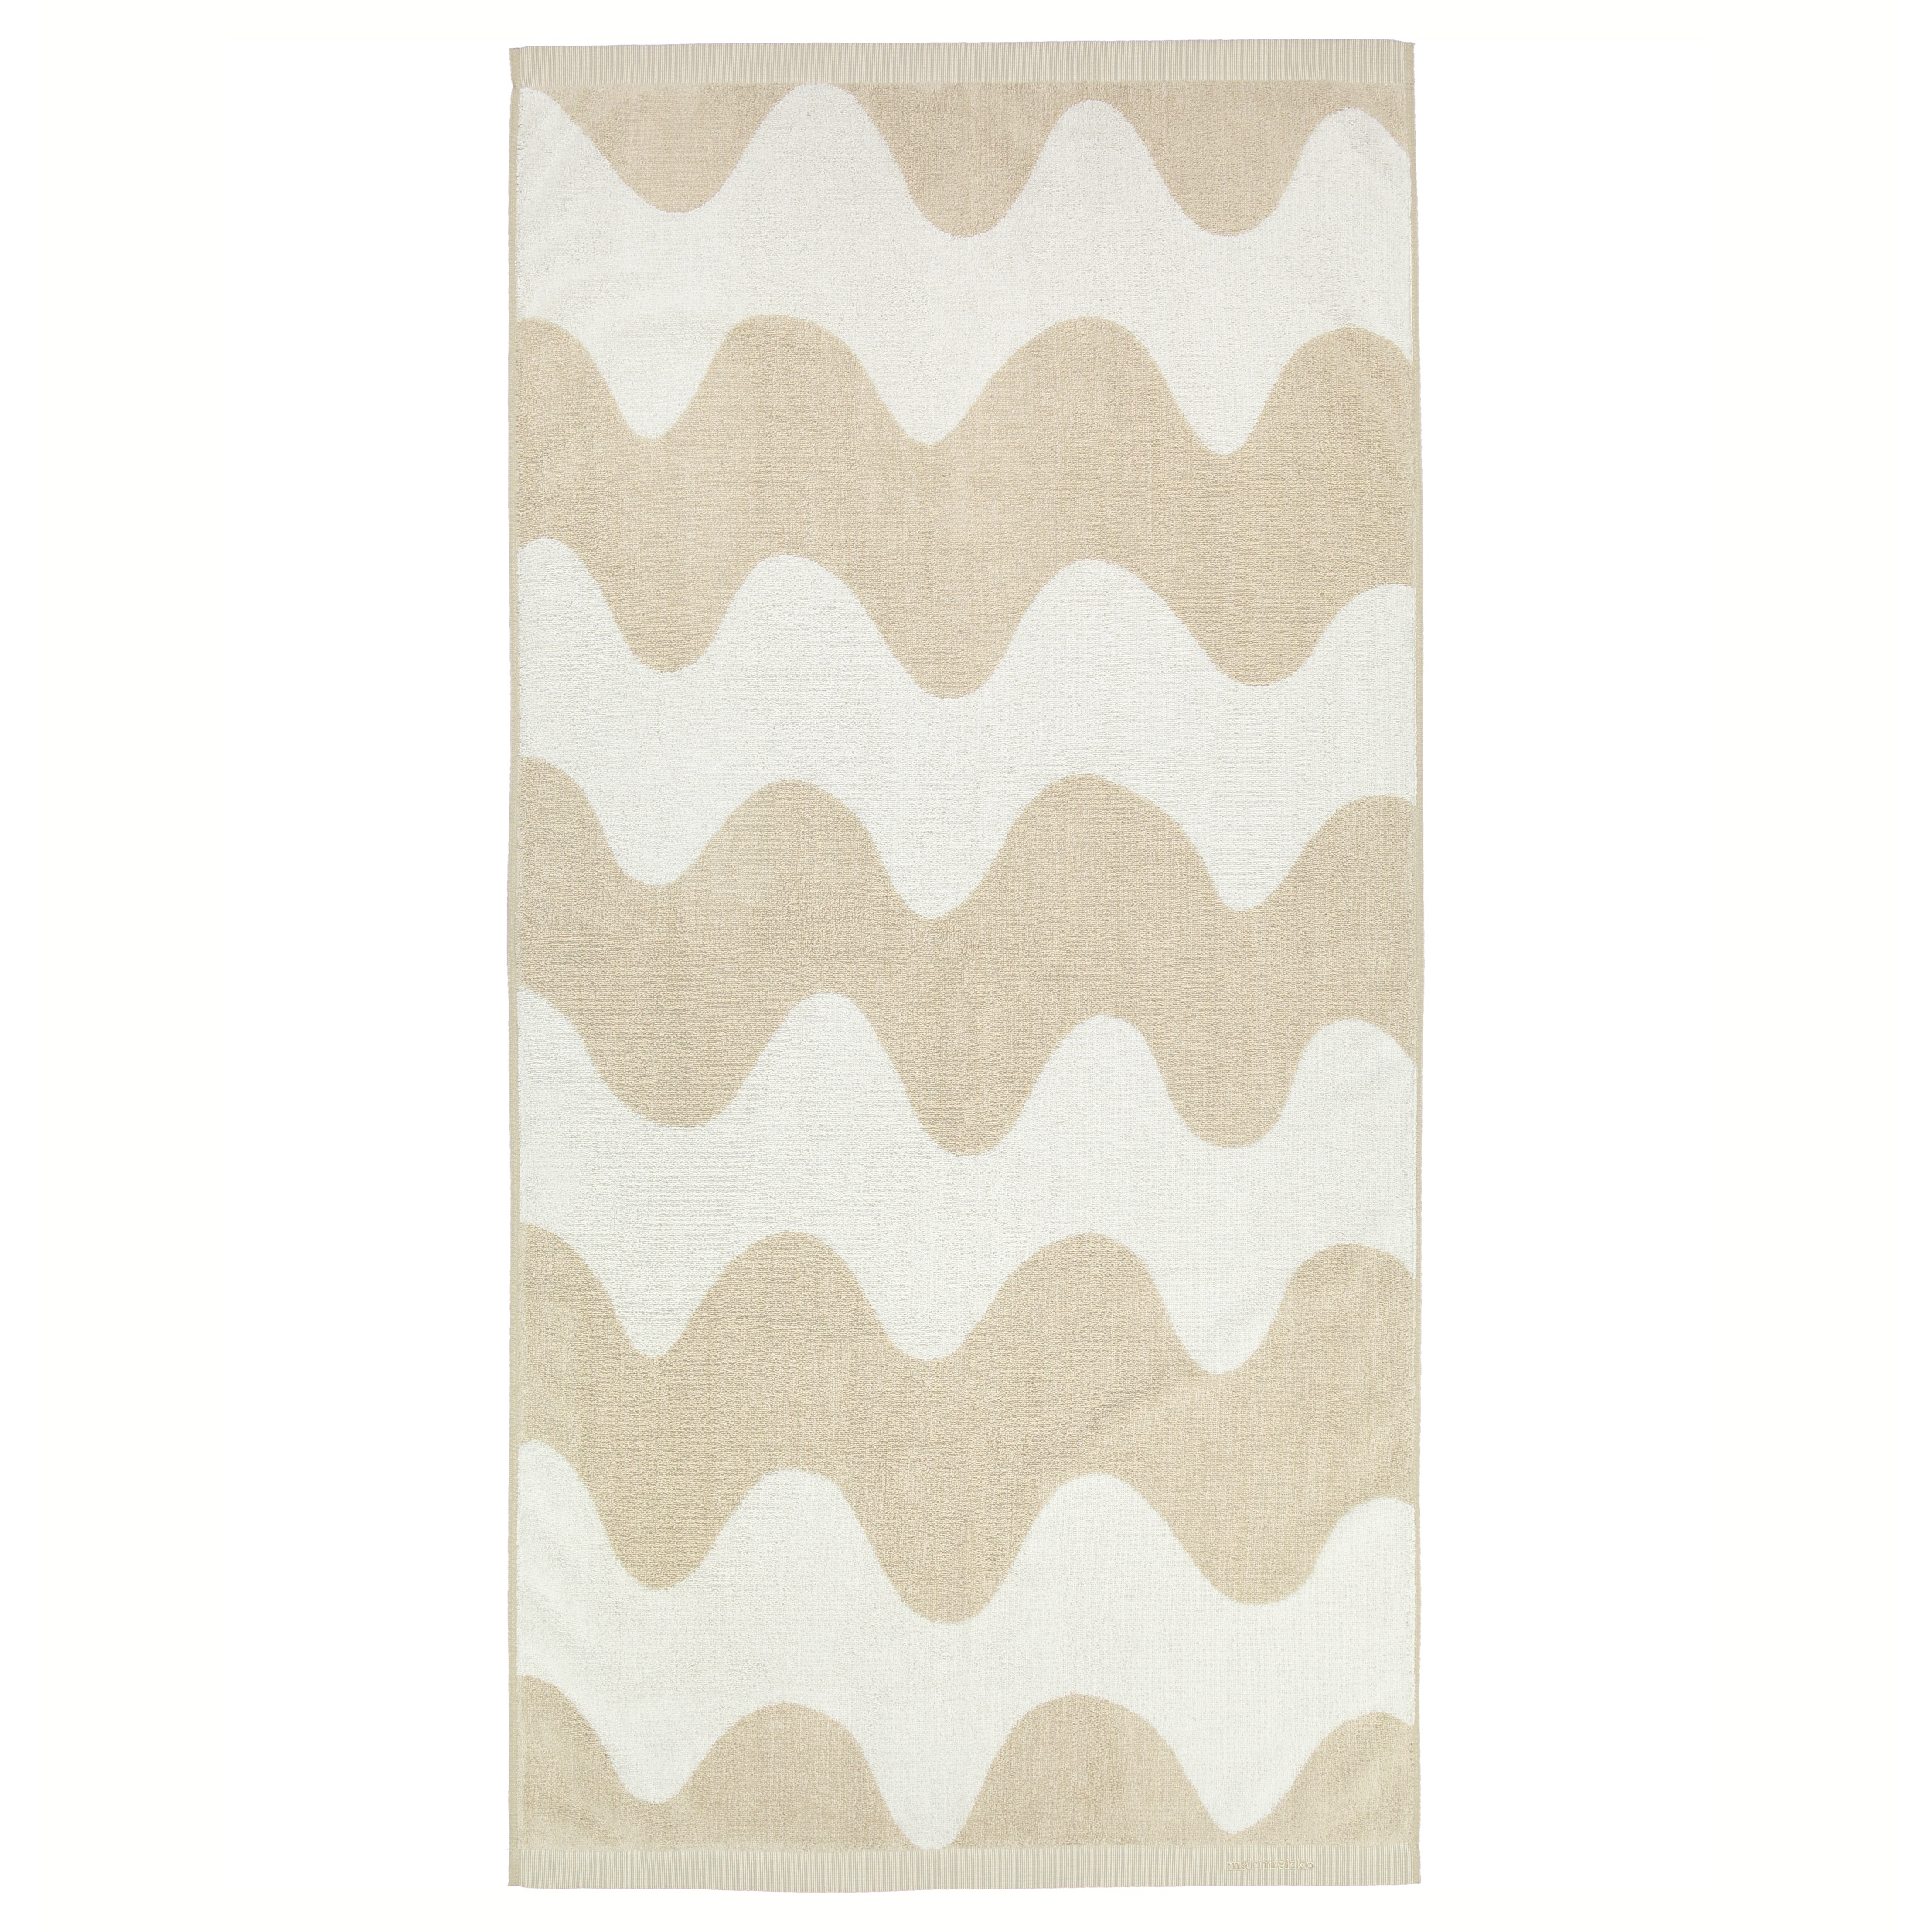 Lokki Handtuch beige-weiß von Marimekko online kaufen bei 